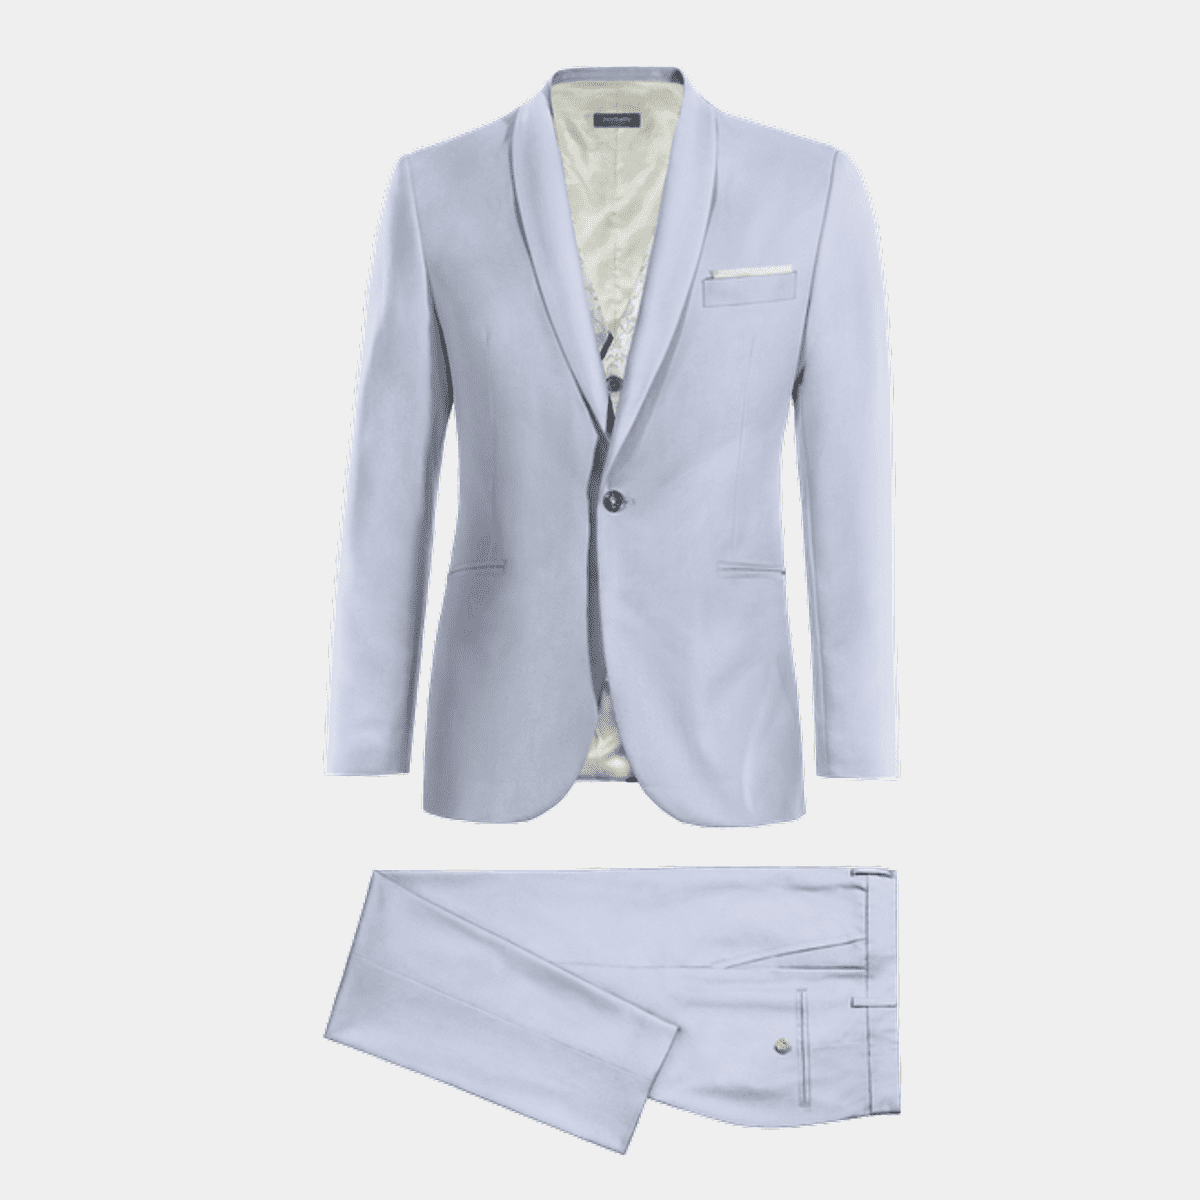 Sky blue Suit with gray floral jacquard vest